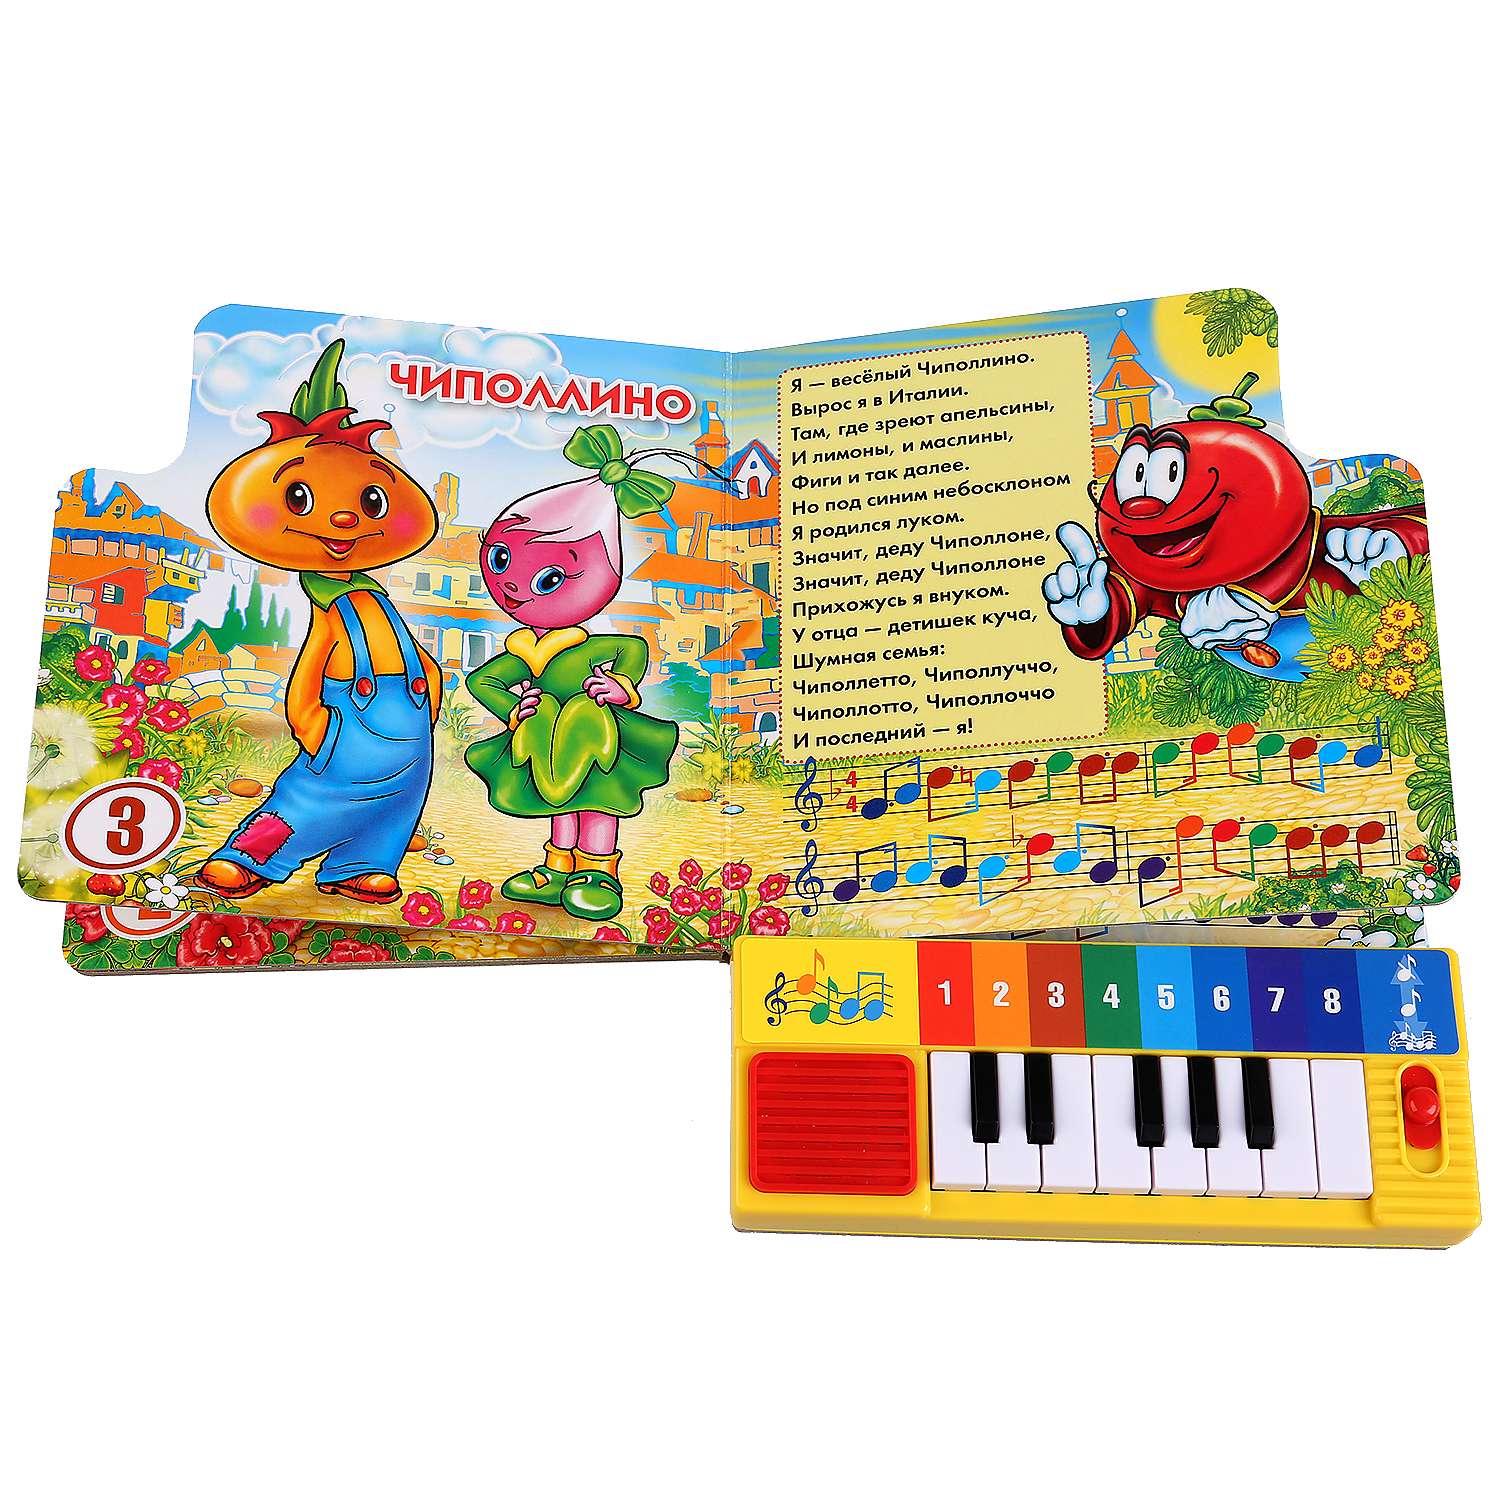 Веселые песенки для детей 2 года. Книга пианино для малышей. Книжка с пианино для малышей. Книжка пианино Умка. Музыкальные книги для детей.